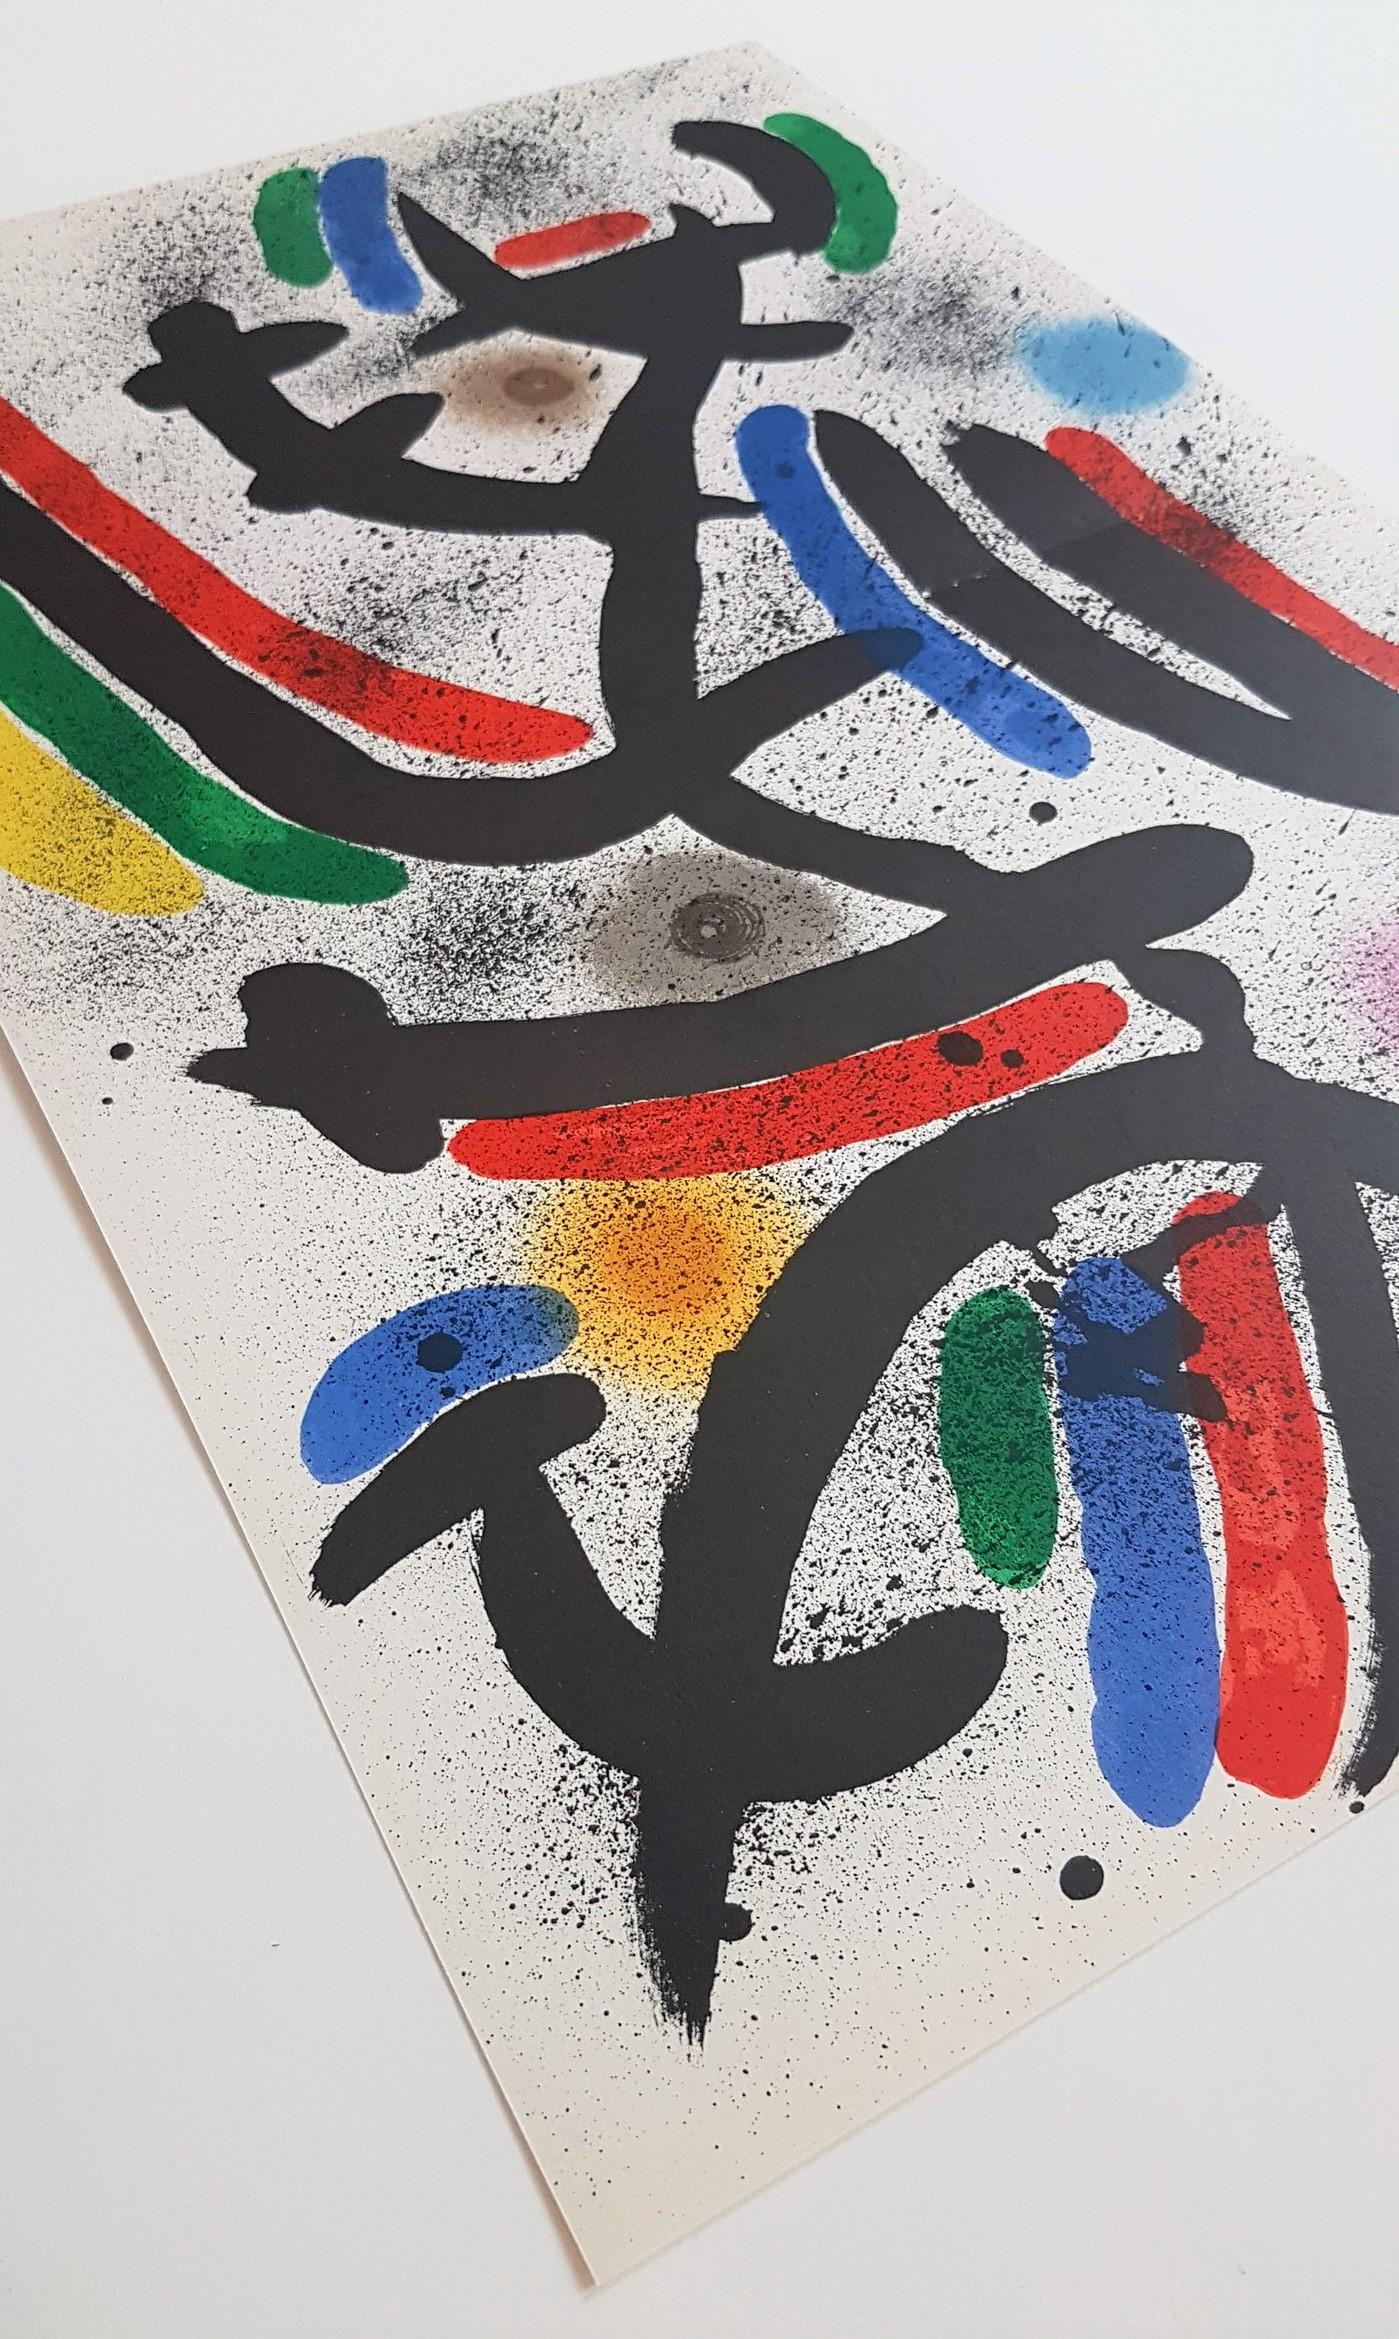 Litografia Original IX - Modern Print by Joan Miró